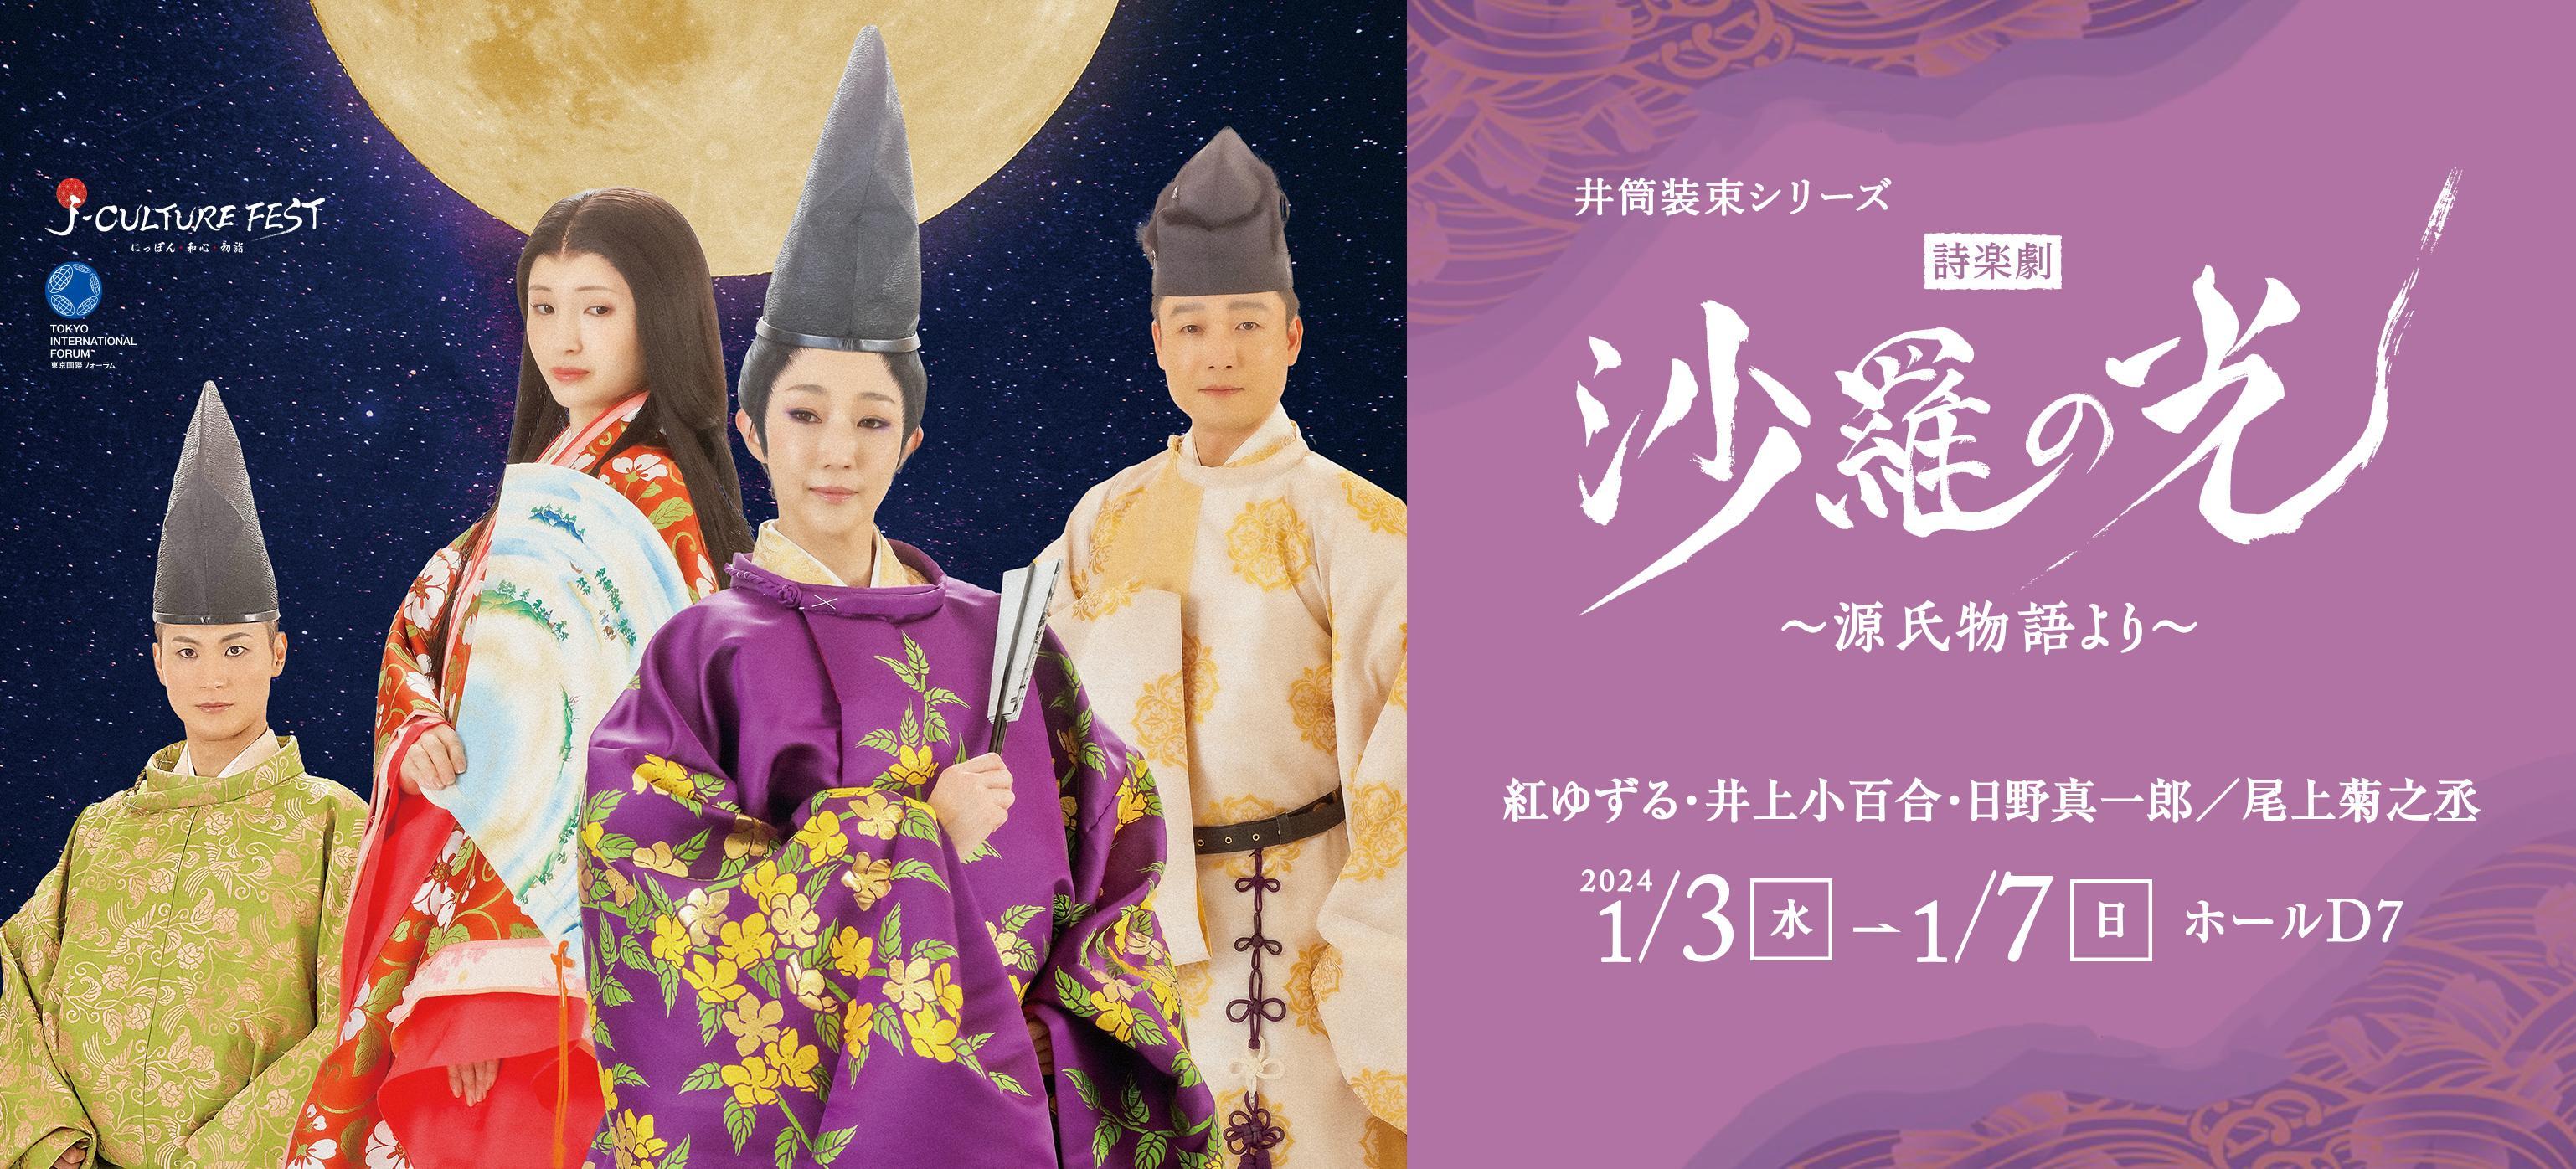 J-CULTURE FEST presents　井筒装束シリーズ 詩楽劇「沙羅の光」～源氏物語より～